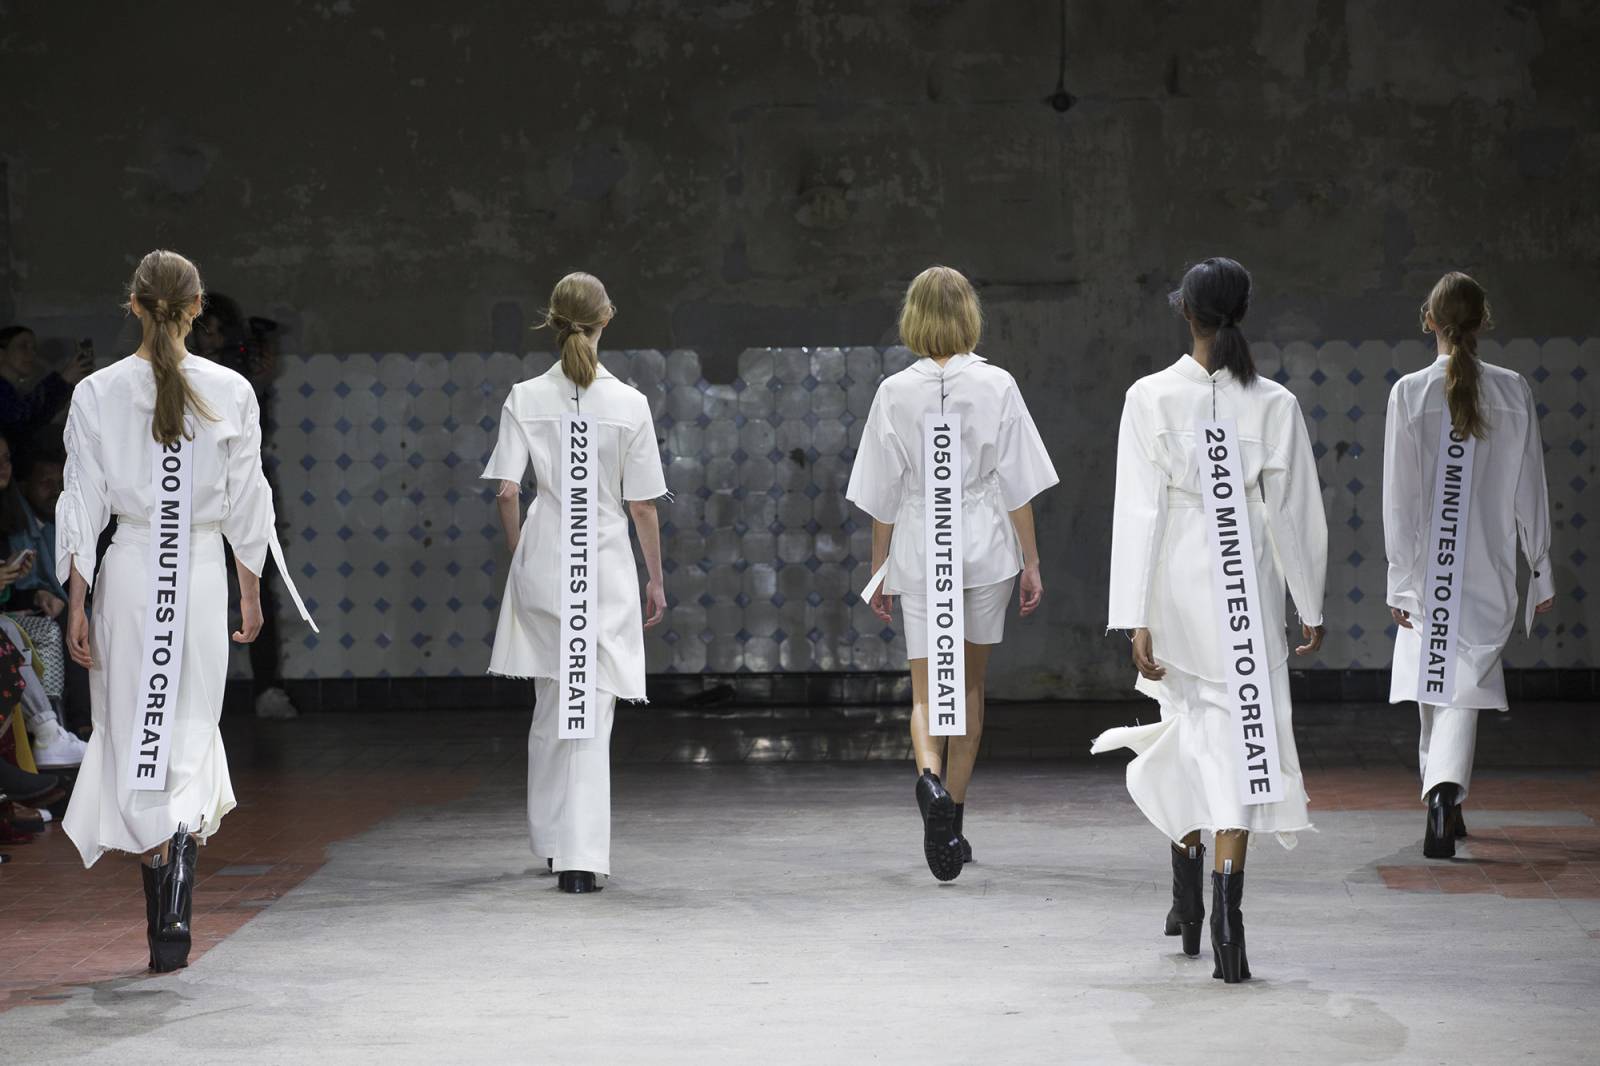 Pokaz Mykke Hofmann podczas tygodnia mody w Kopenhadze (Fot. Matt Jelonek/Wire Image)